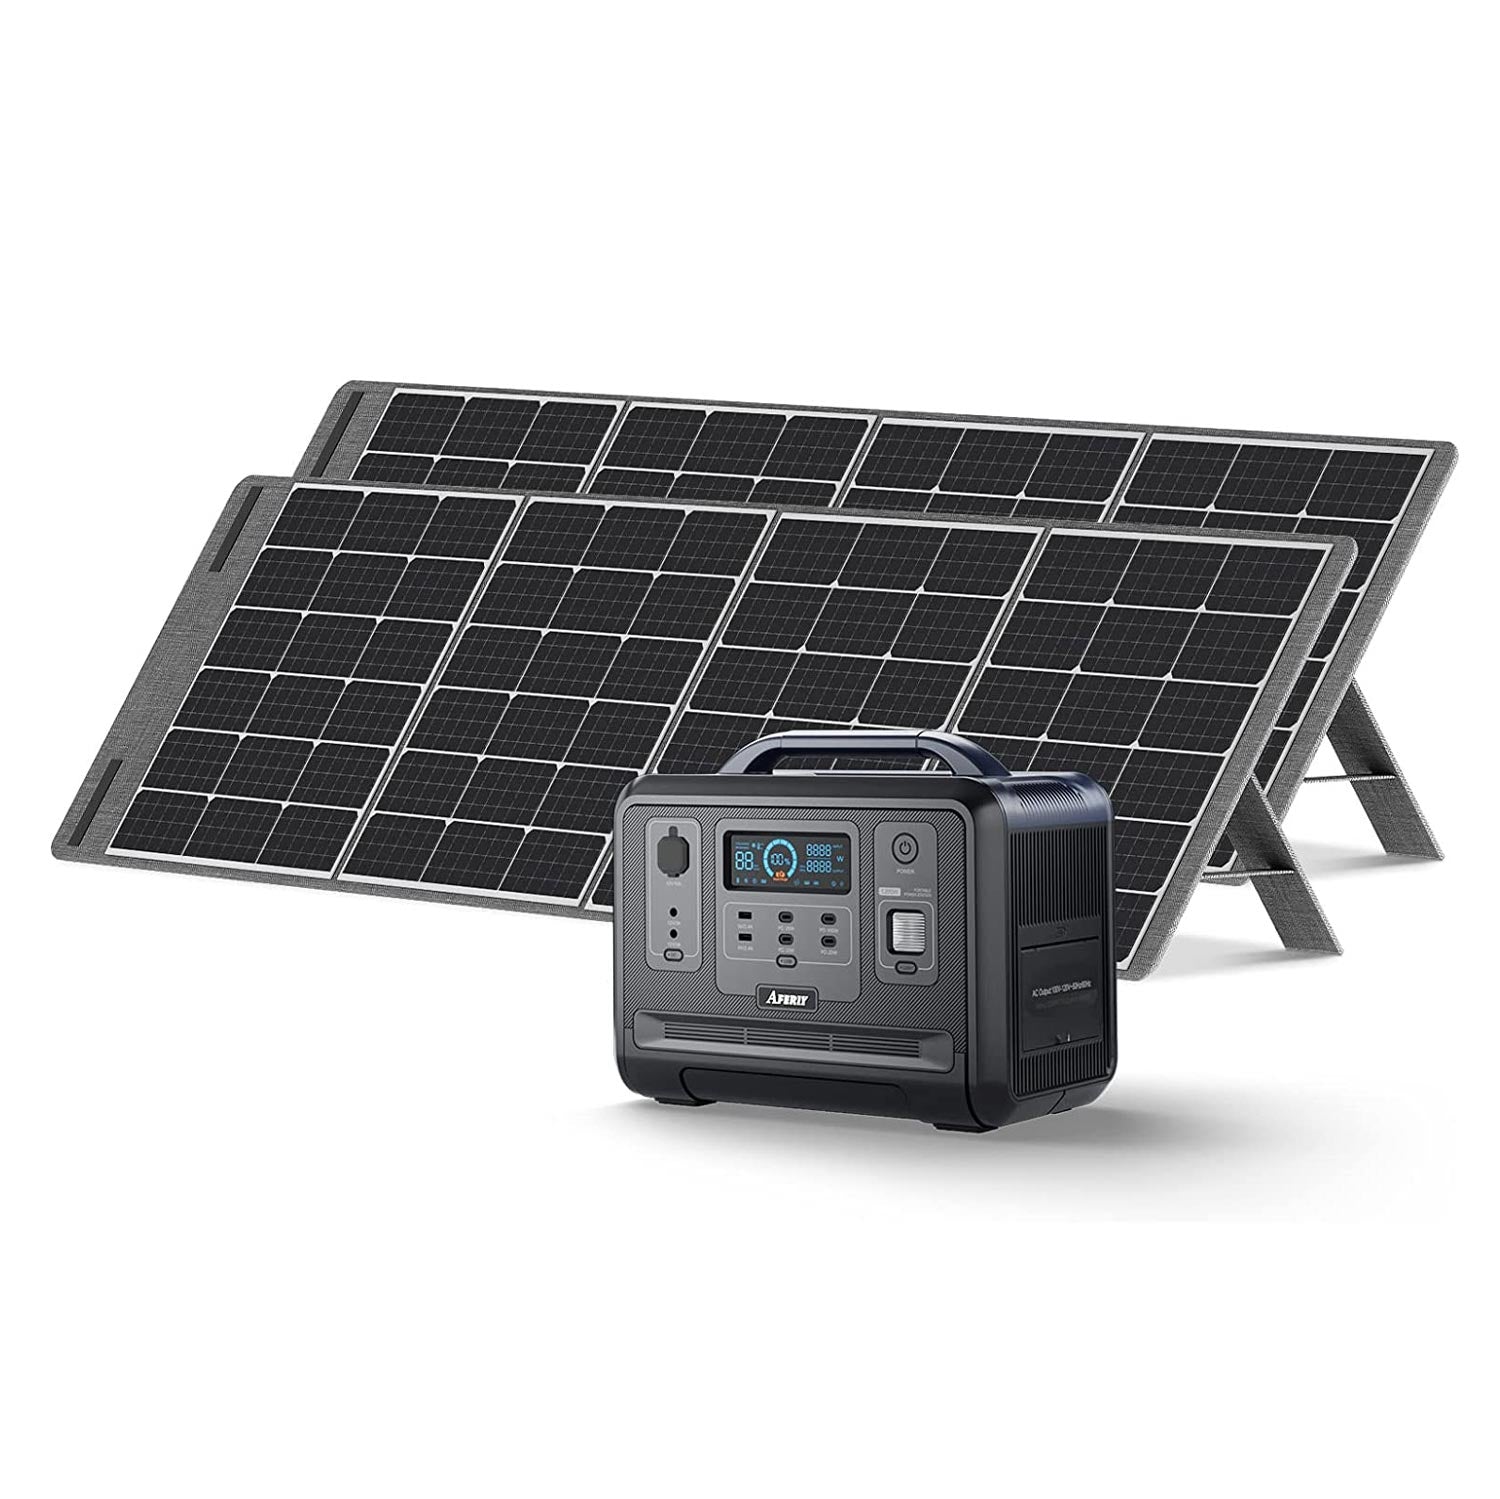 AFERIY Solar Generator 1201Aポータブル電源 AF-S200 ソーラーパネル セット - 1200W+200W*2